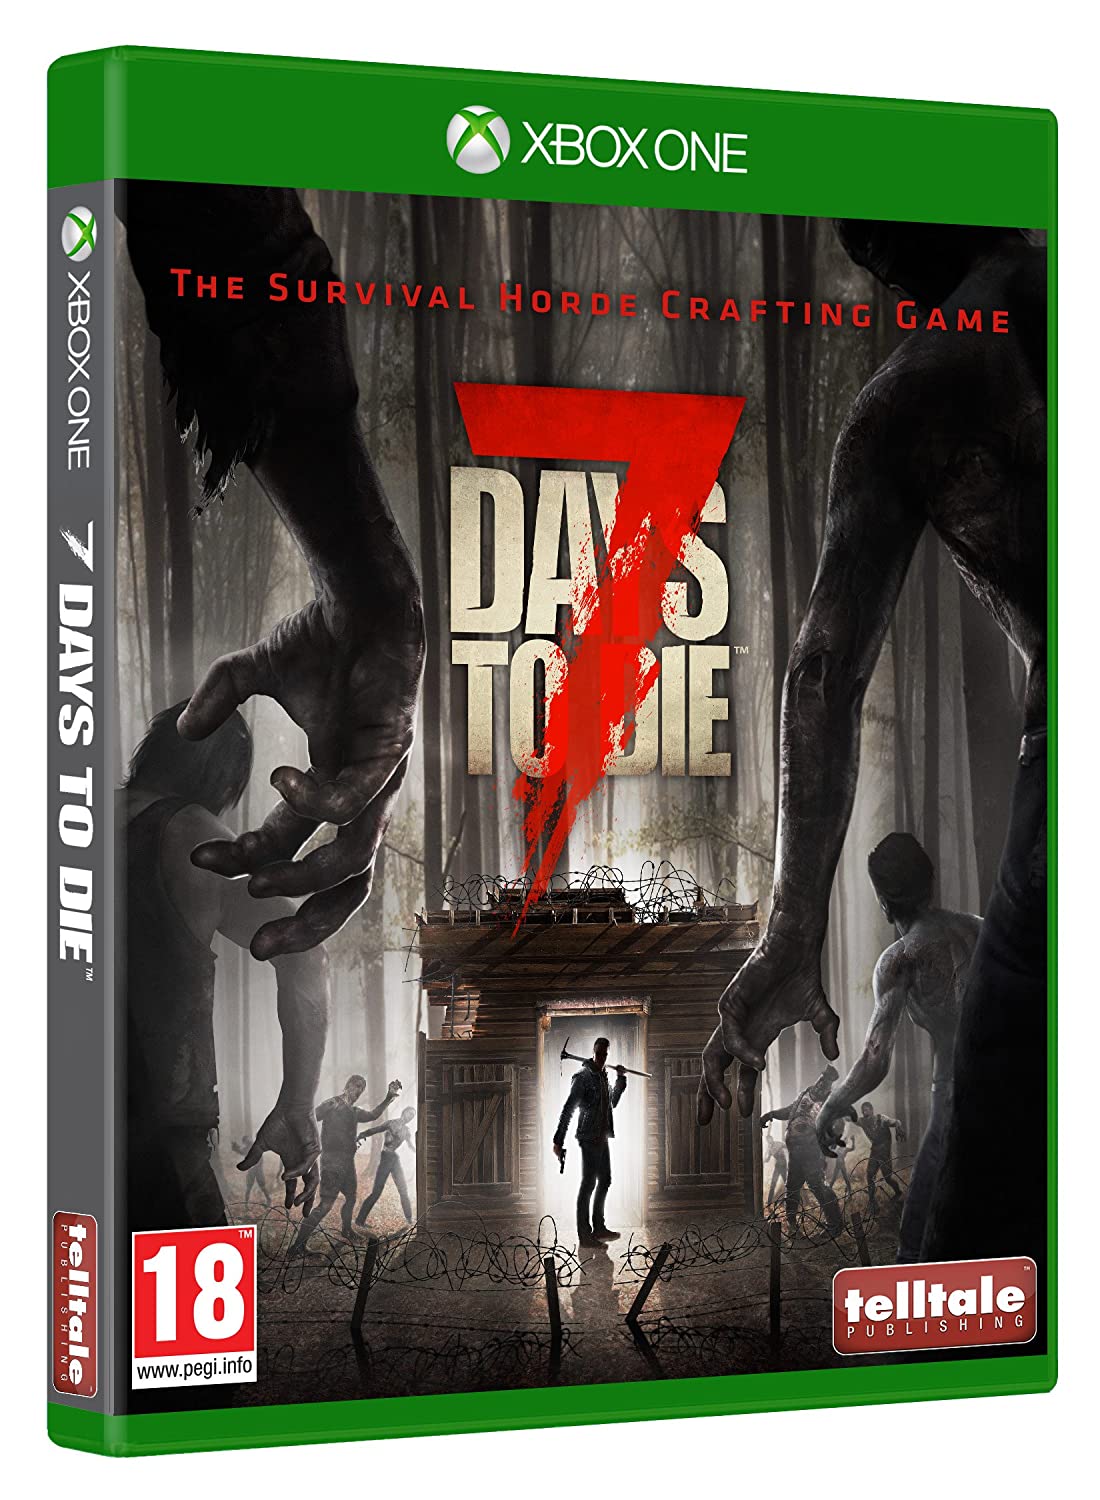 veeg Vijandig hypotheek 7 Days to Die CD Key for Xbox One (Digital Download)